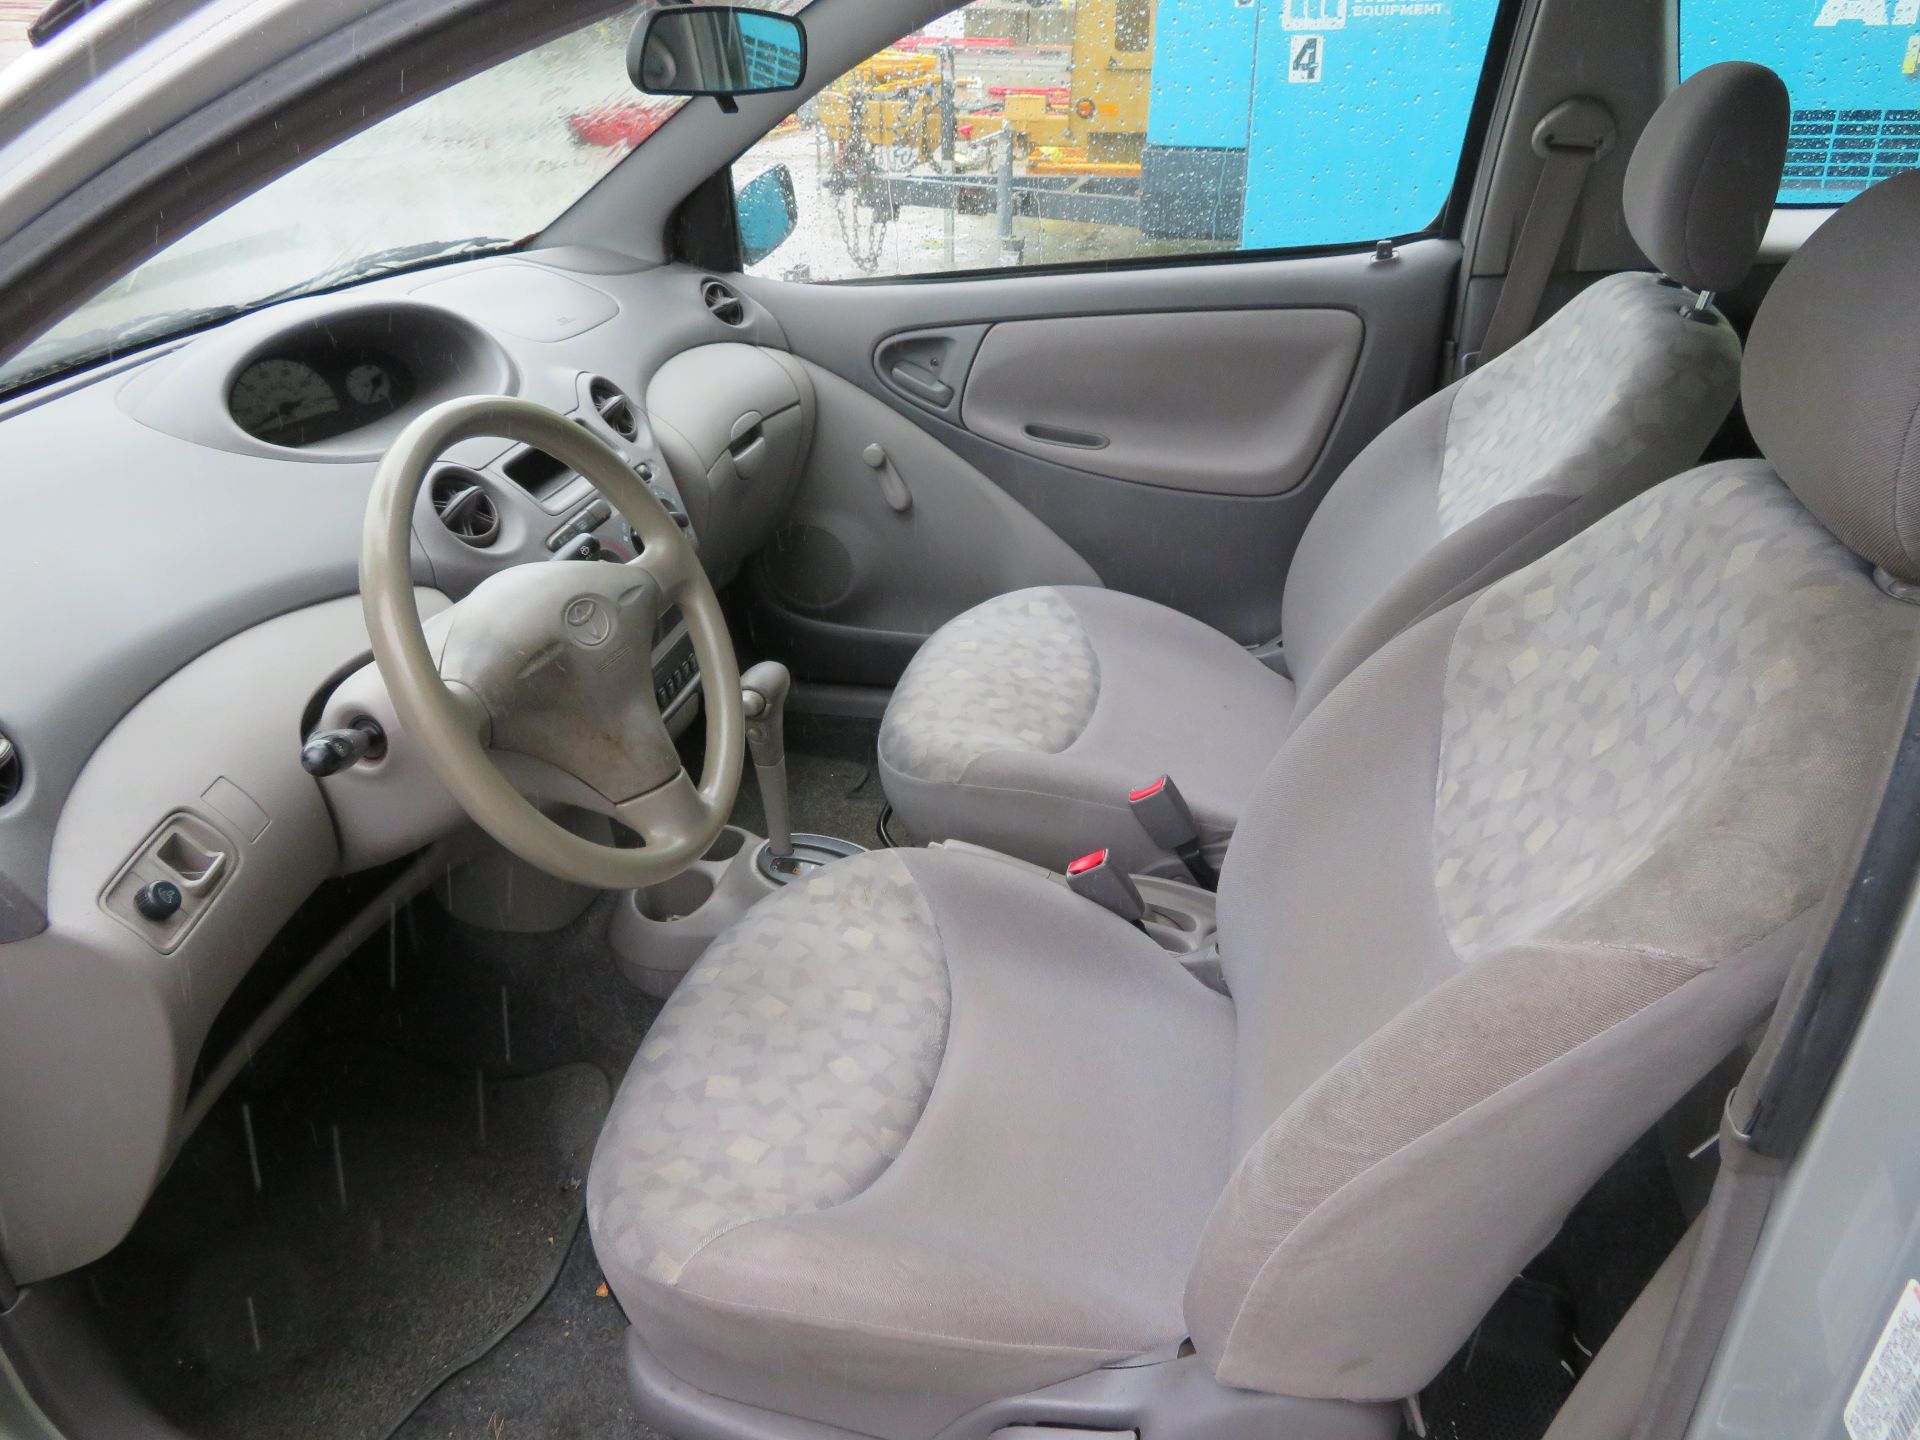 2002 Toyota Echo 2-Door, VIN JTDAT123820214374, 113,787 Indicated Miles - Bild 4 aus 7